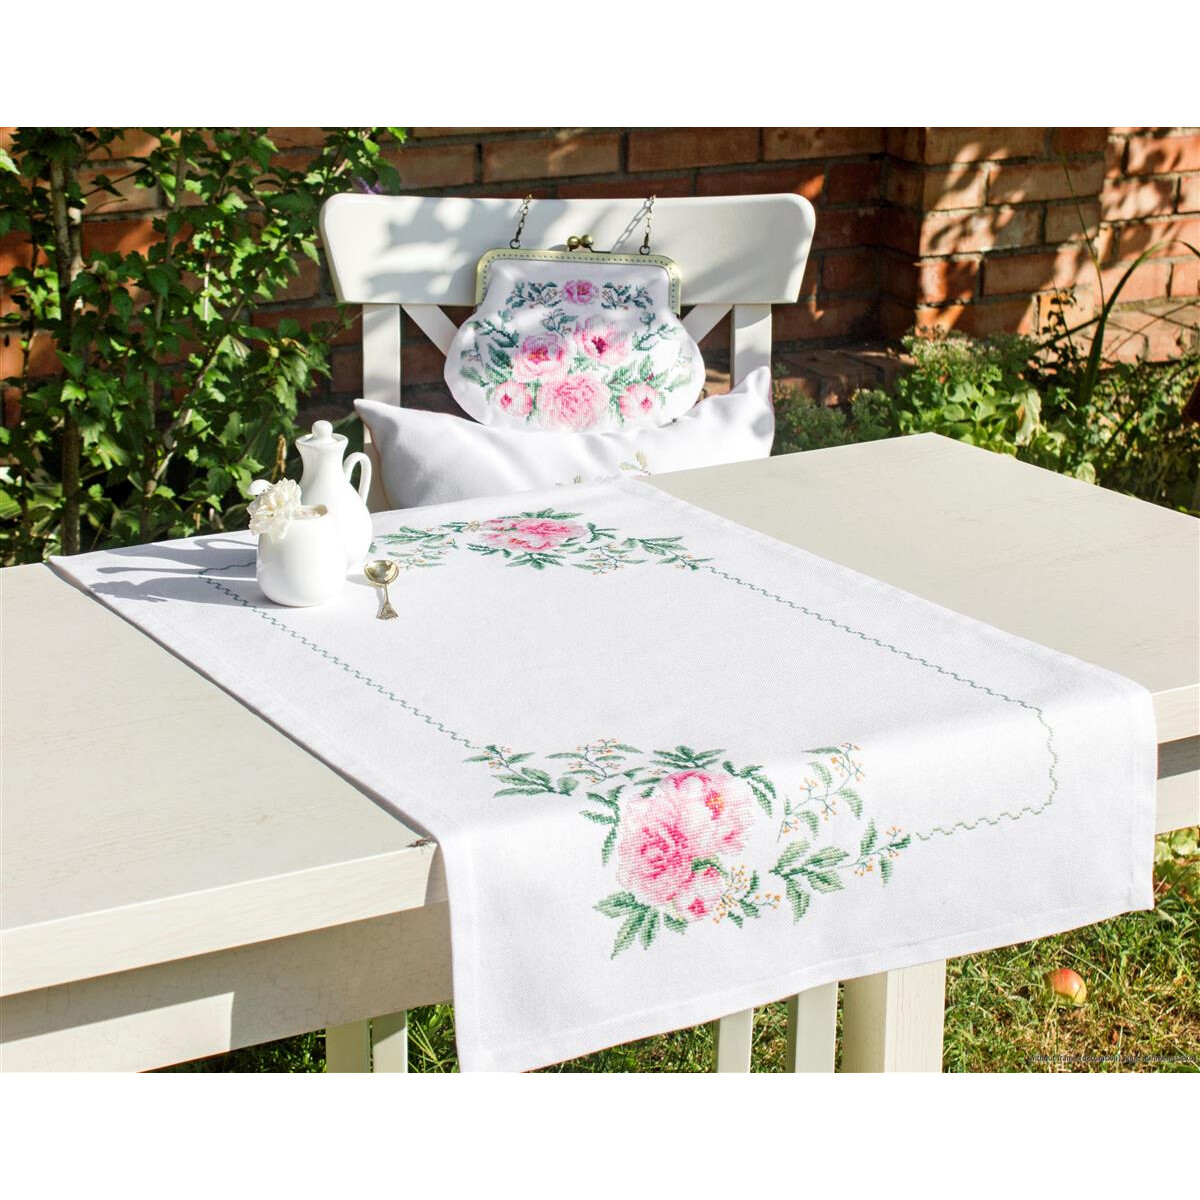 Un tavolo bianco con un runner ricamato con fiori, rose...